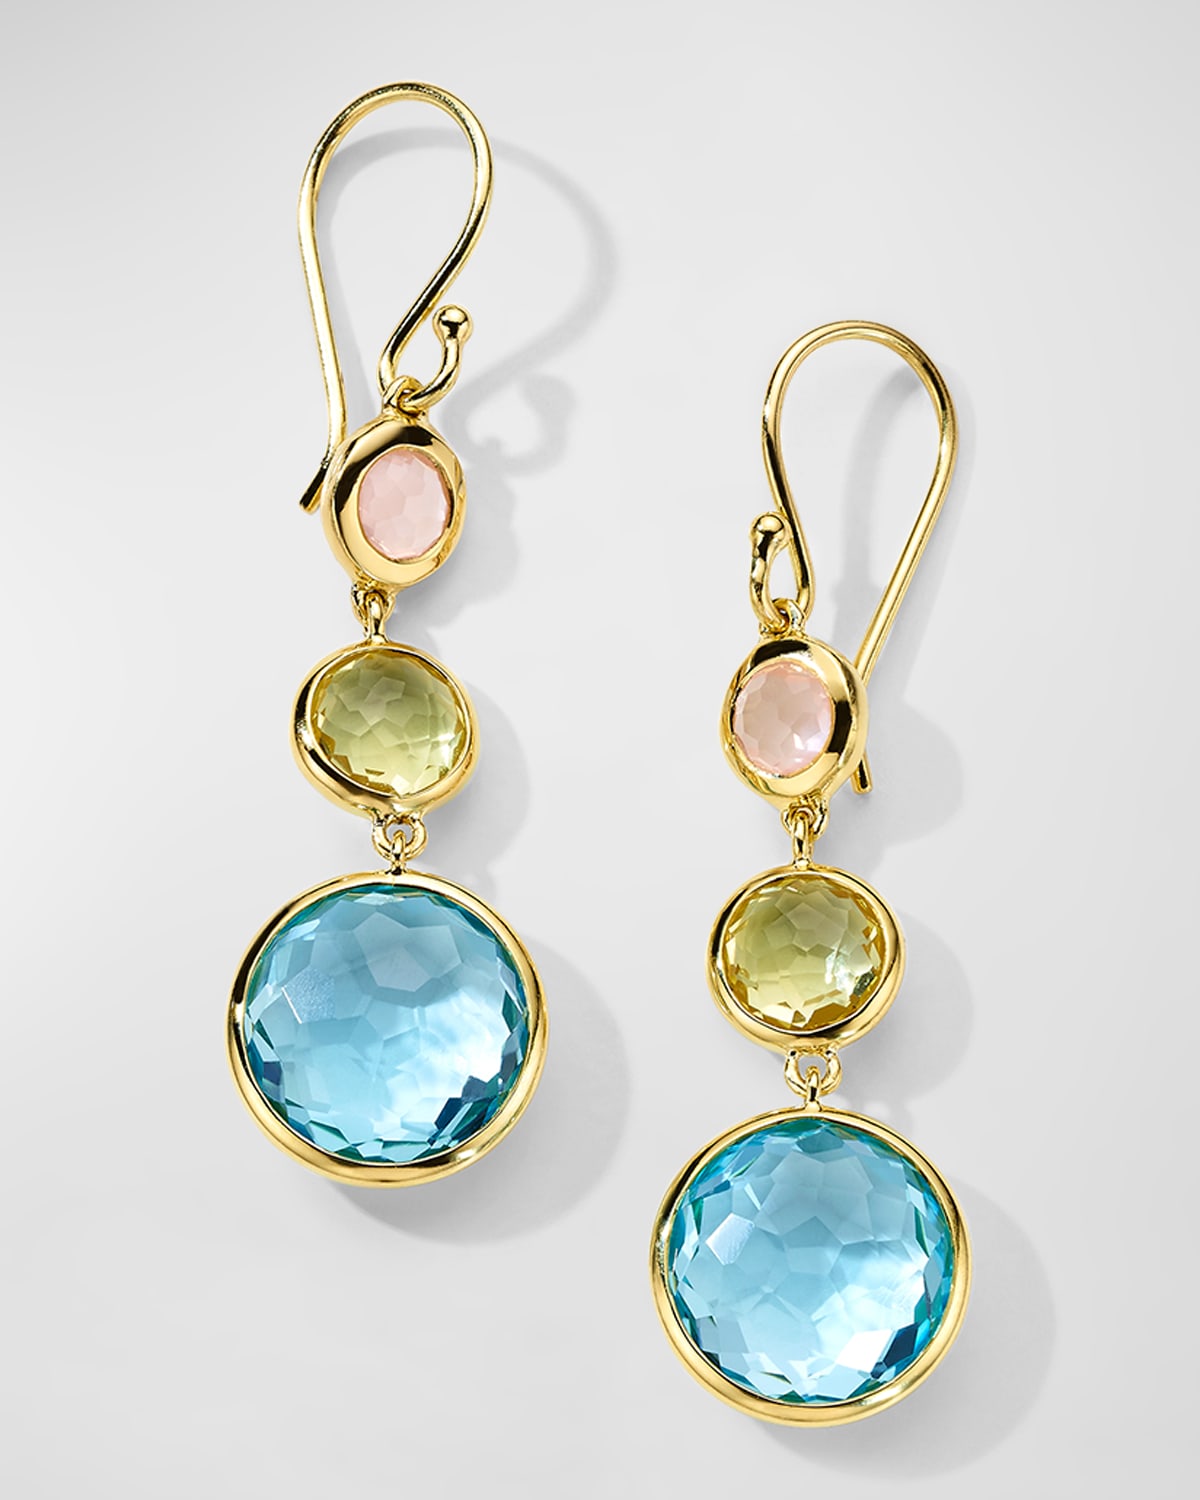 Lollitini 3-Stone Drop Earrings in 18K Gold